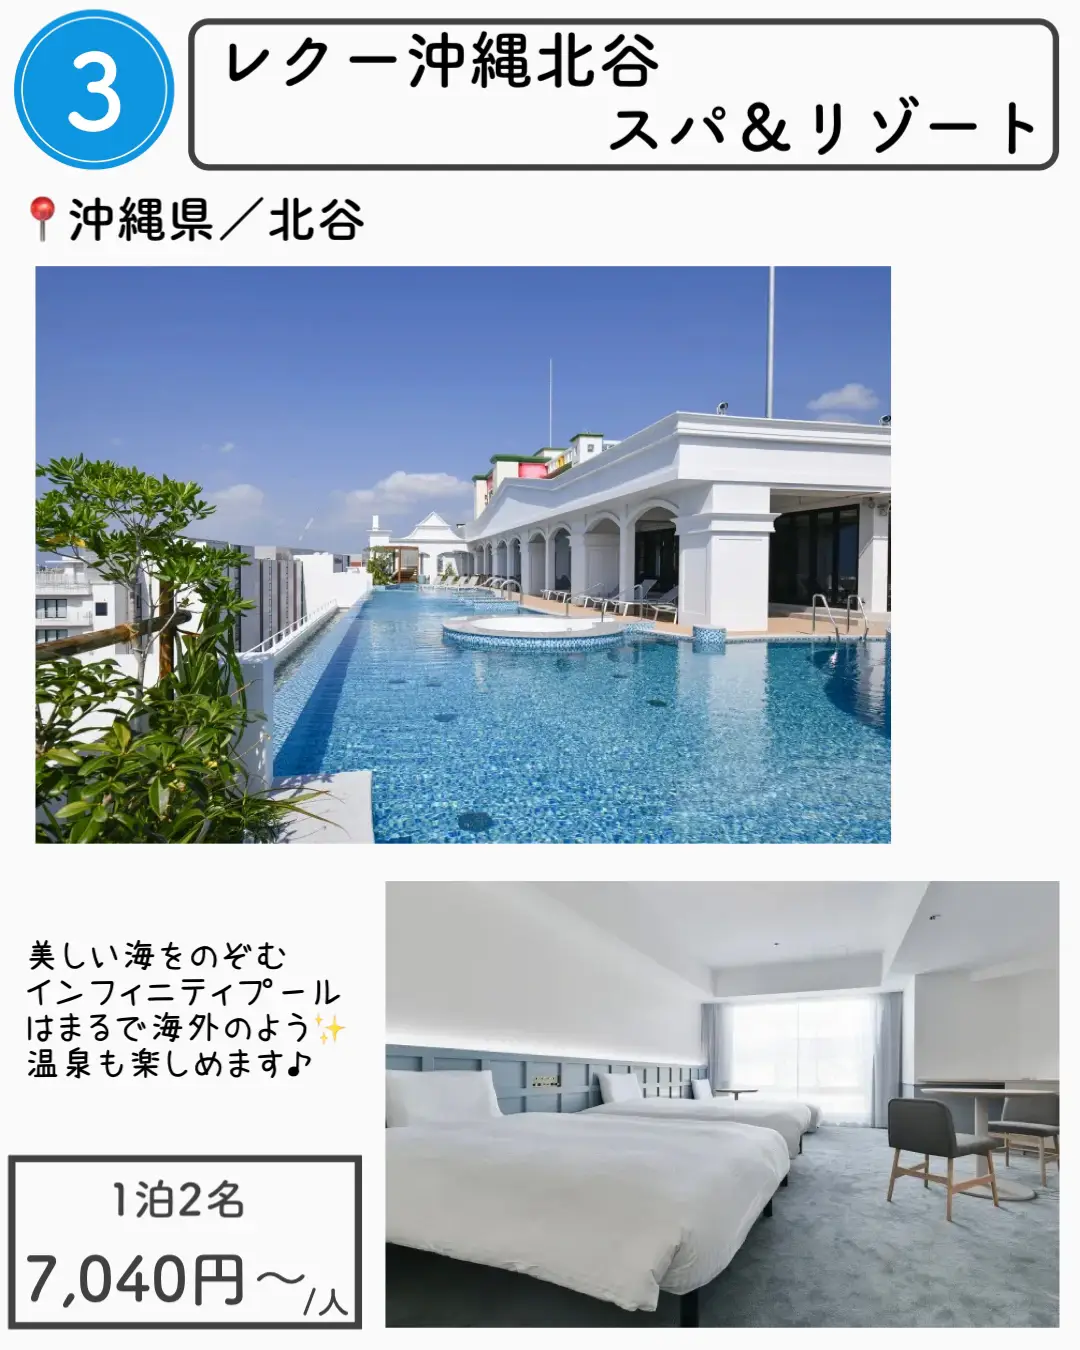 【沖縄】1万円以下で泊まれる沖縄ホテル7選の画像 (3枚目)